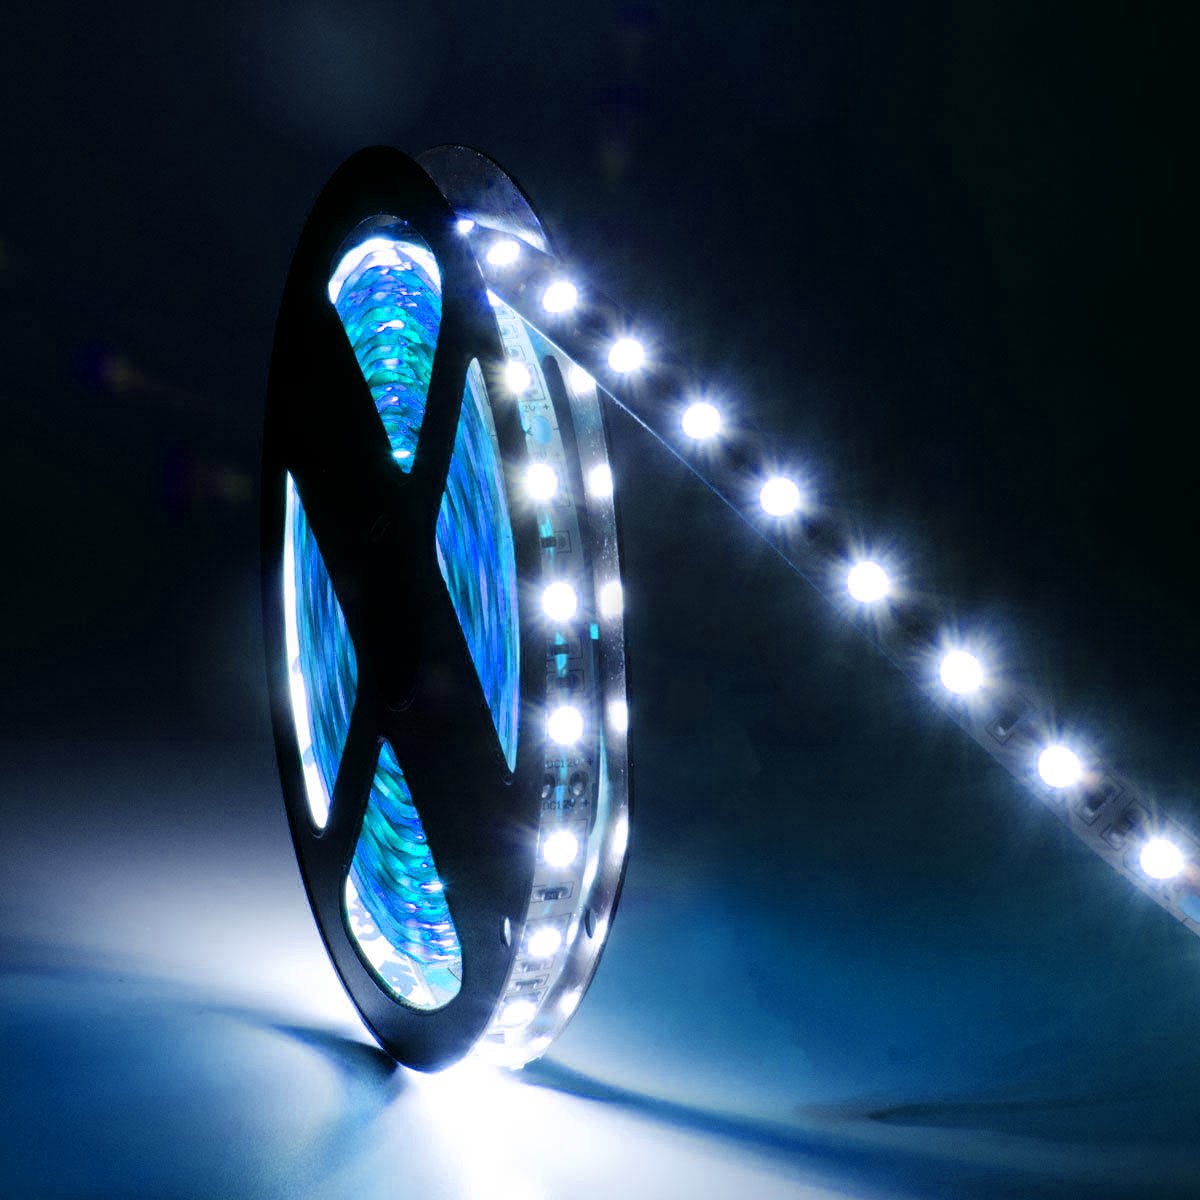 G.W.S LED Wholesale LED Strip Lights IP44 (Splashproof) / Blue / Strip Only IP44 5050 5 Meters 60 LEDs/M LED Strip Light